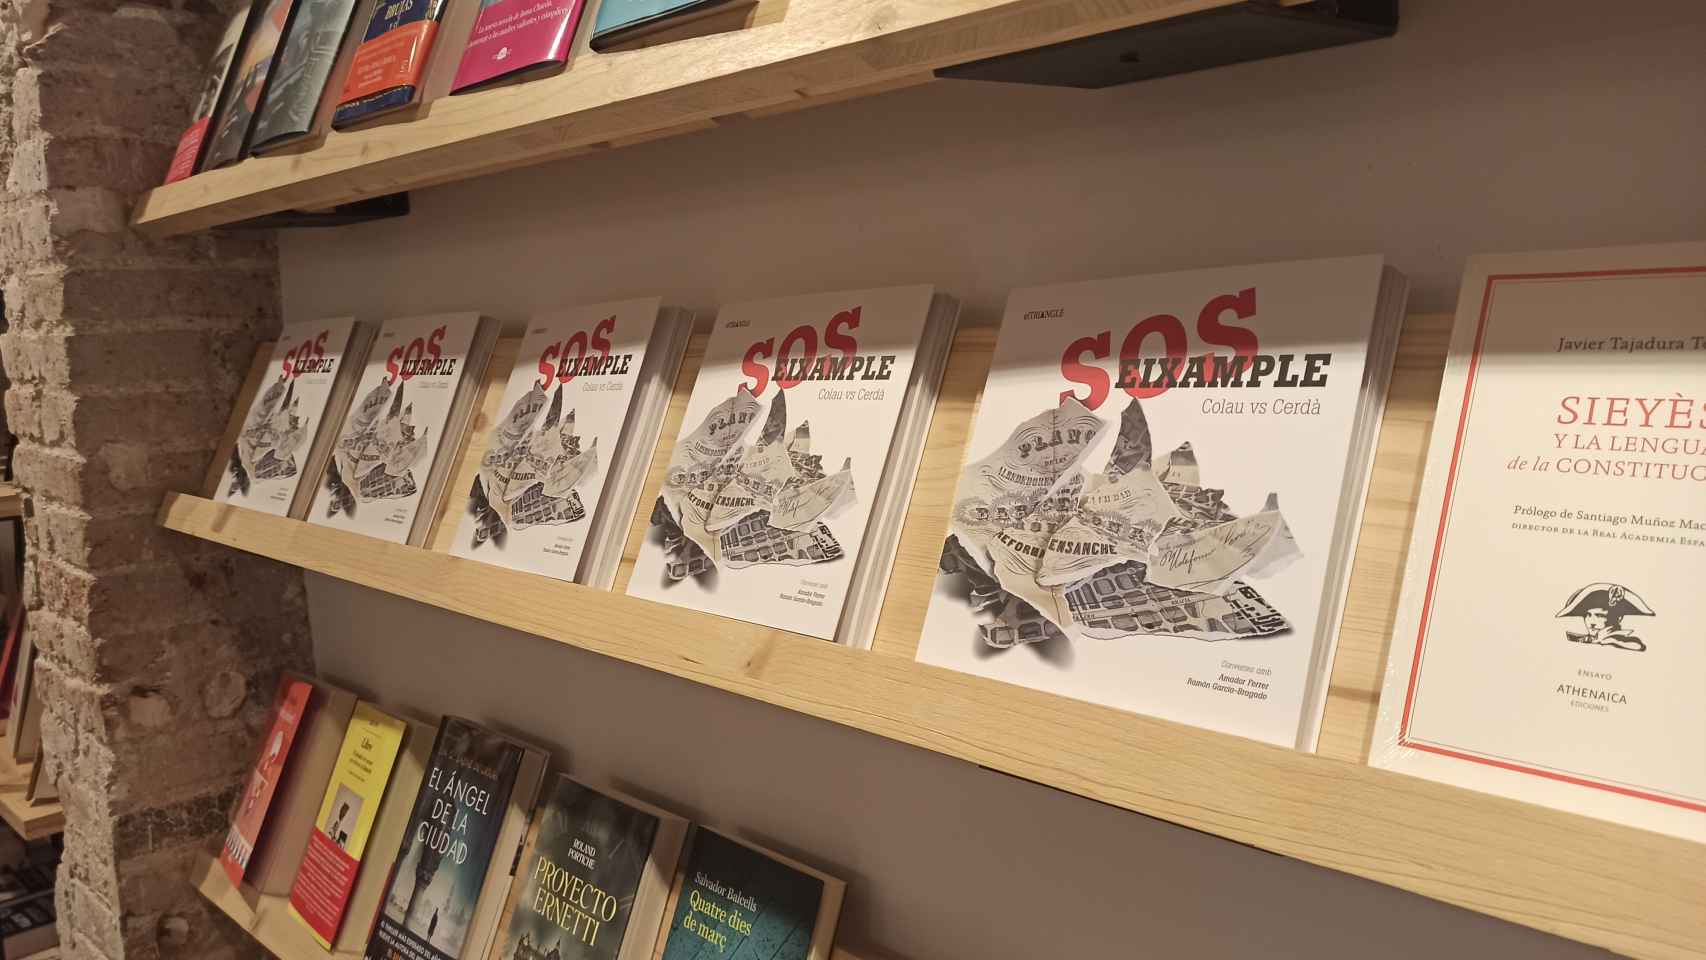 El libro 'S.O.S Eixample: Colau vs Cerdà' expuesto en la librería Byron de Barcelona